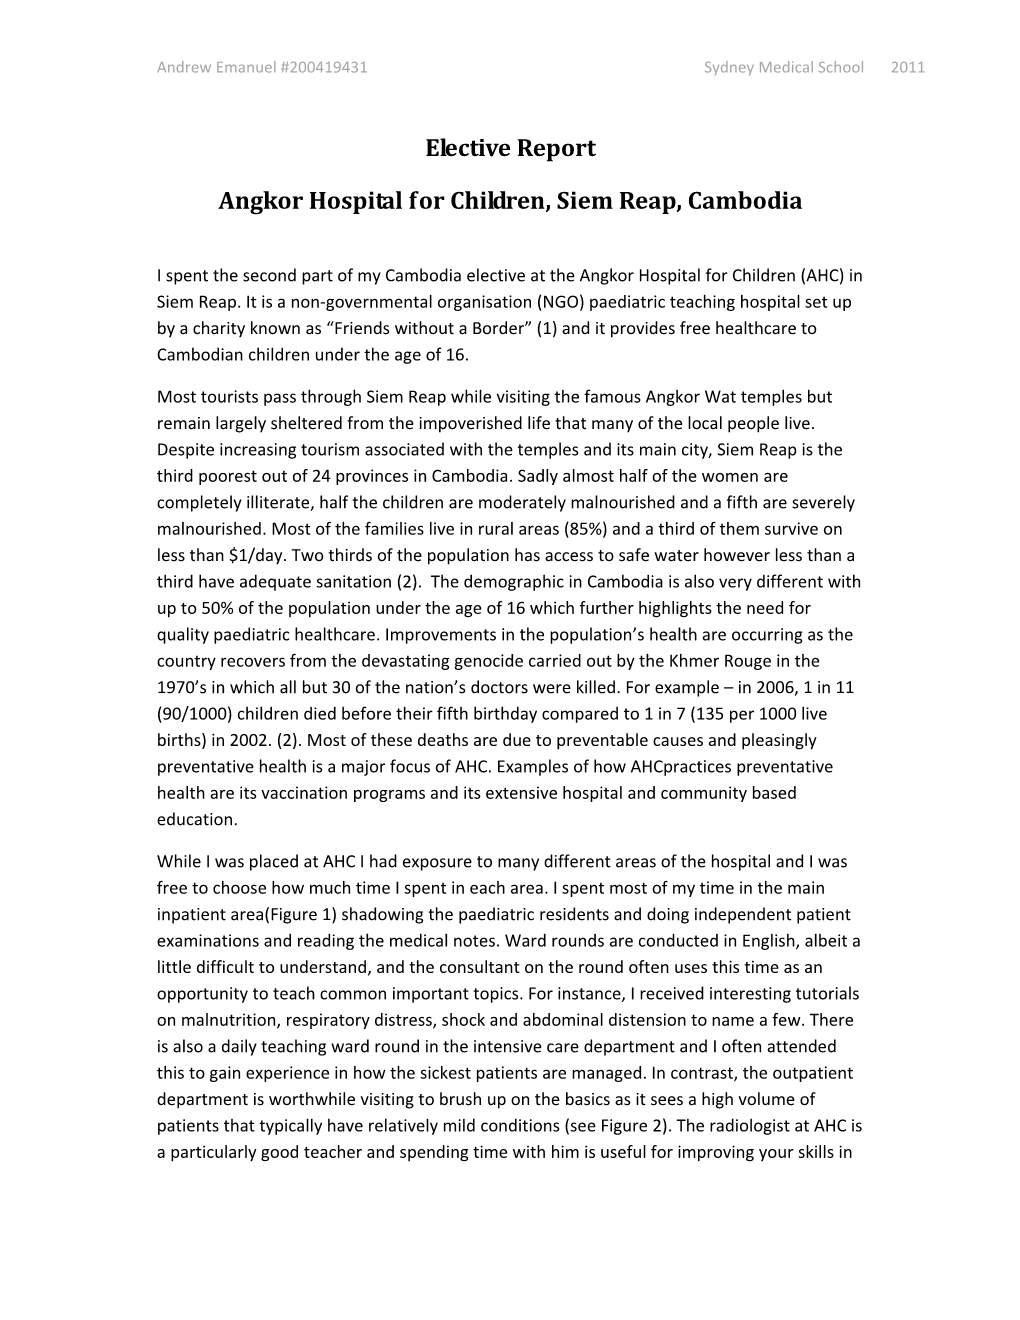 Angkor Children's Hospital